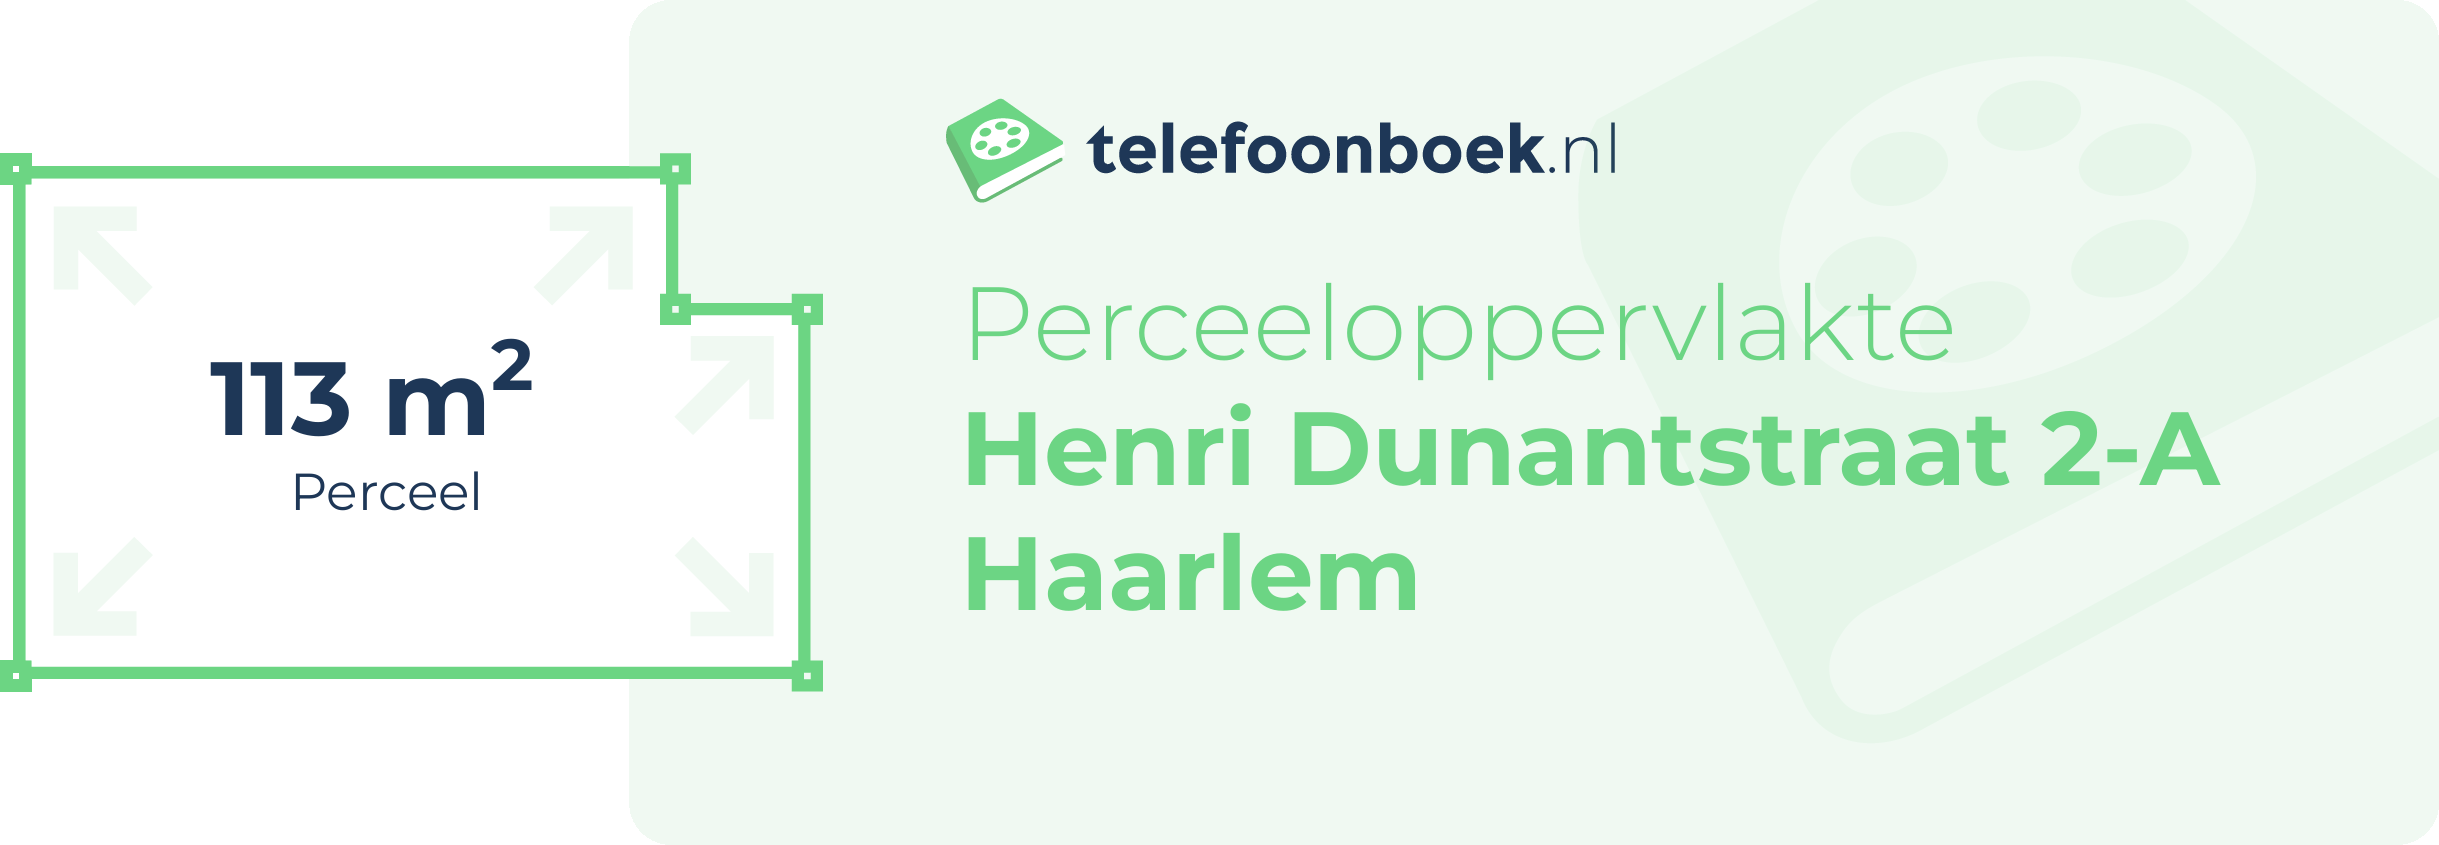 Perceeloppervlakte Henri Dunantstraat 2-A Haarlem